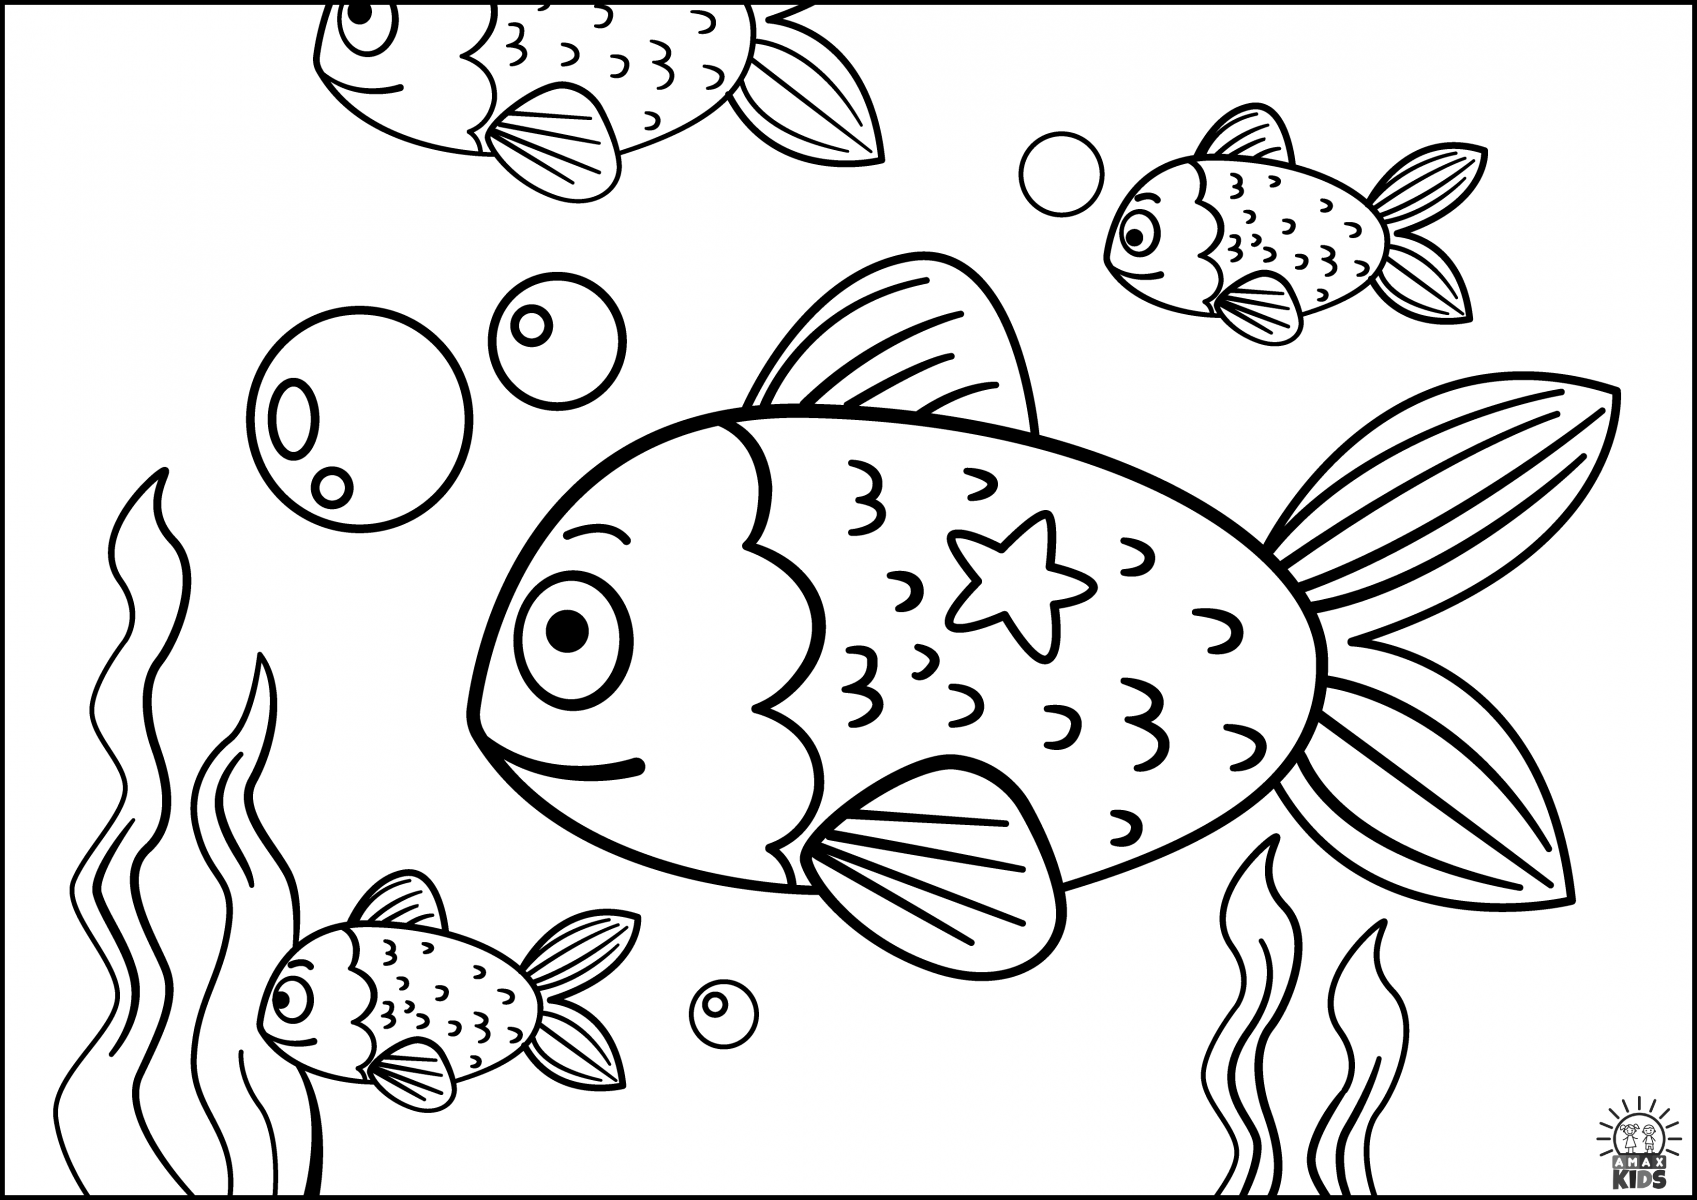 Раскраска рыбки для детей 5 6 лет. Раскраска рыбка. Рыбка раскраска для детей. Рыба раскраска для детей. Аквариумные рыбки раскраска.